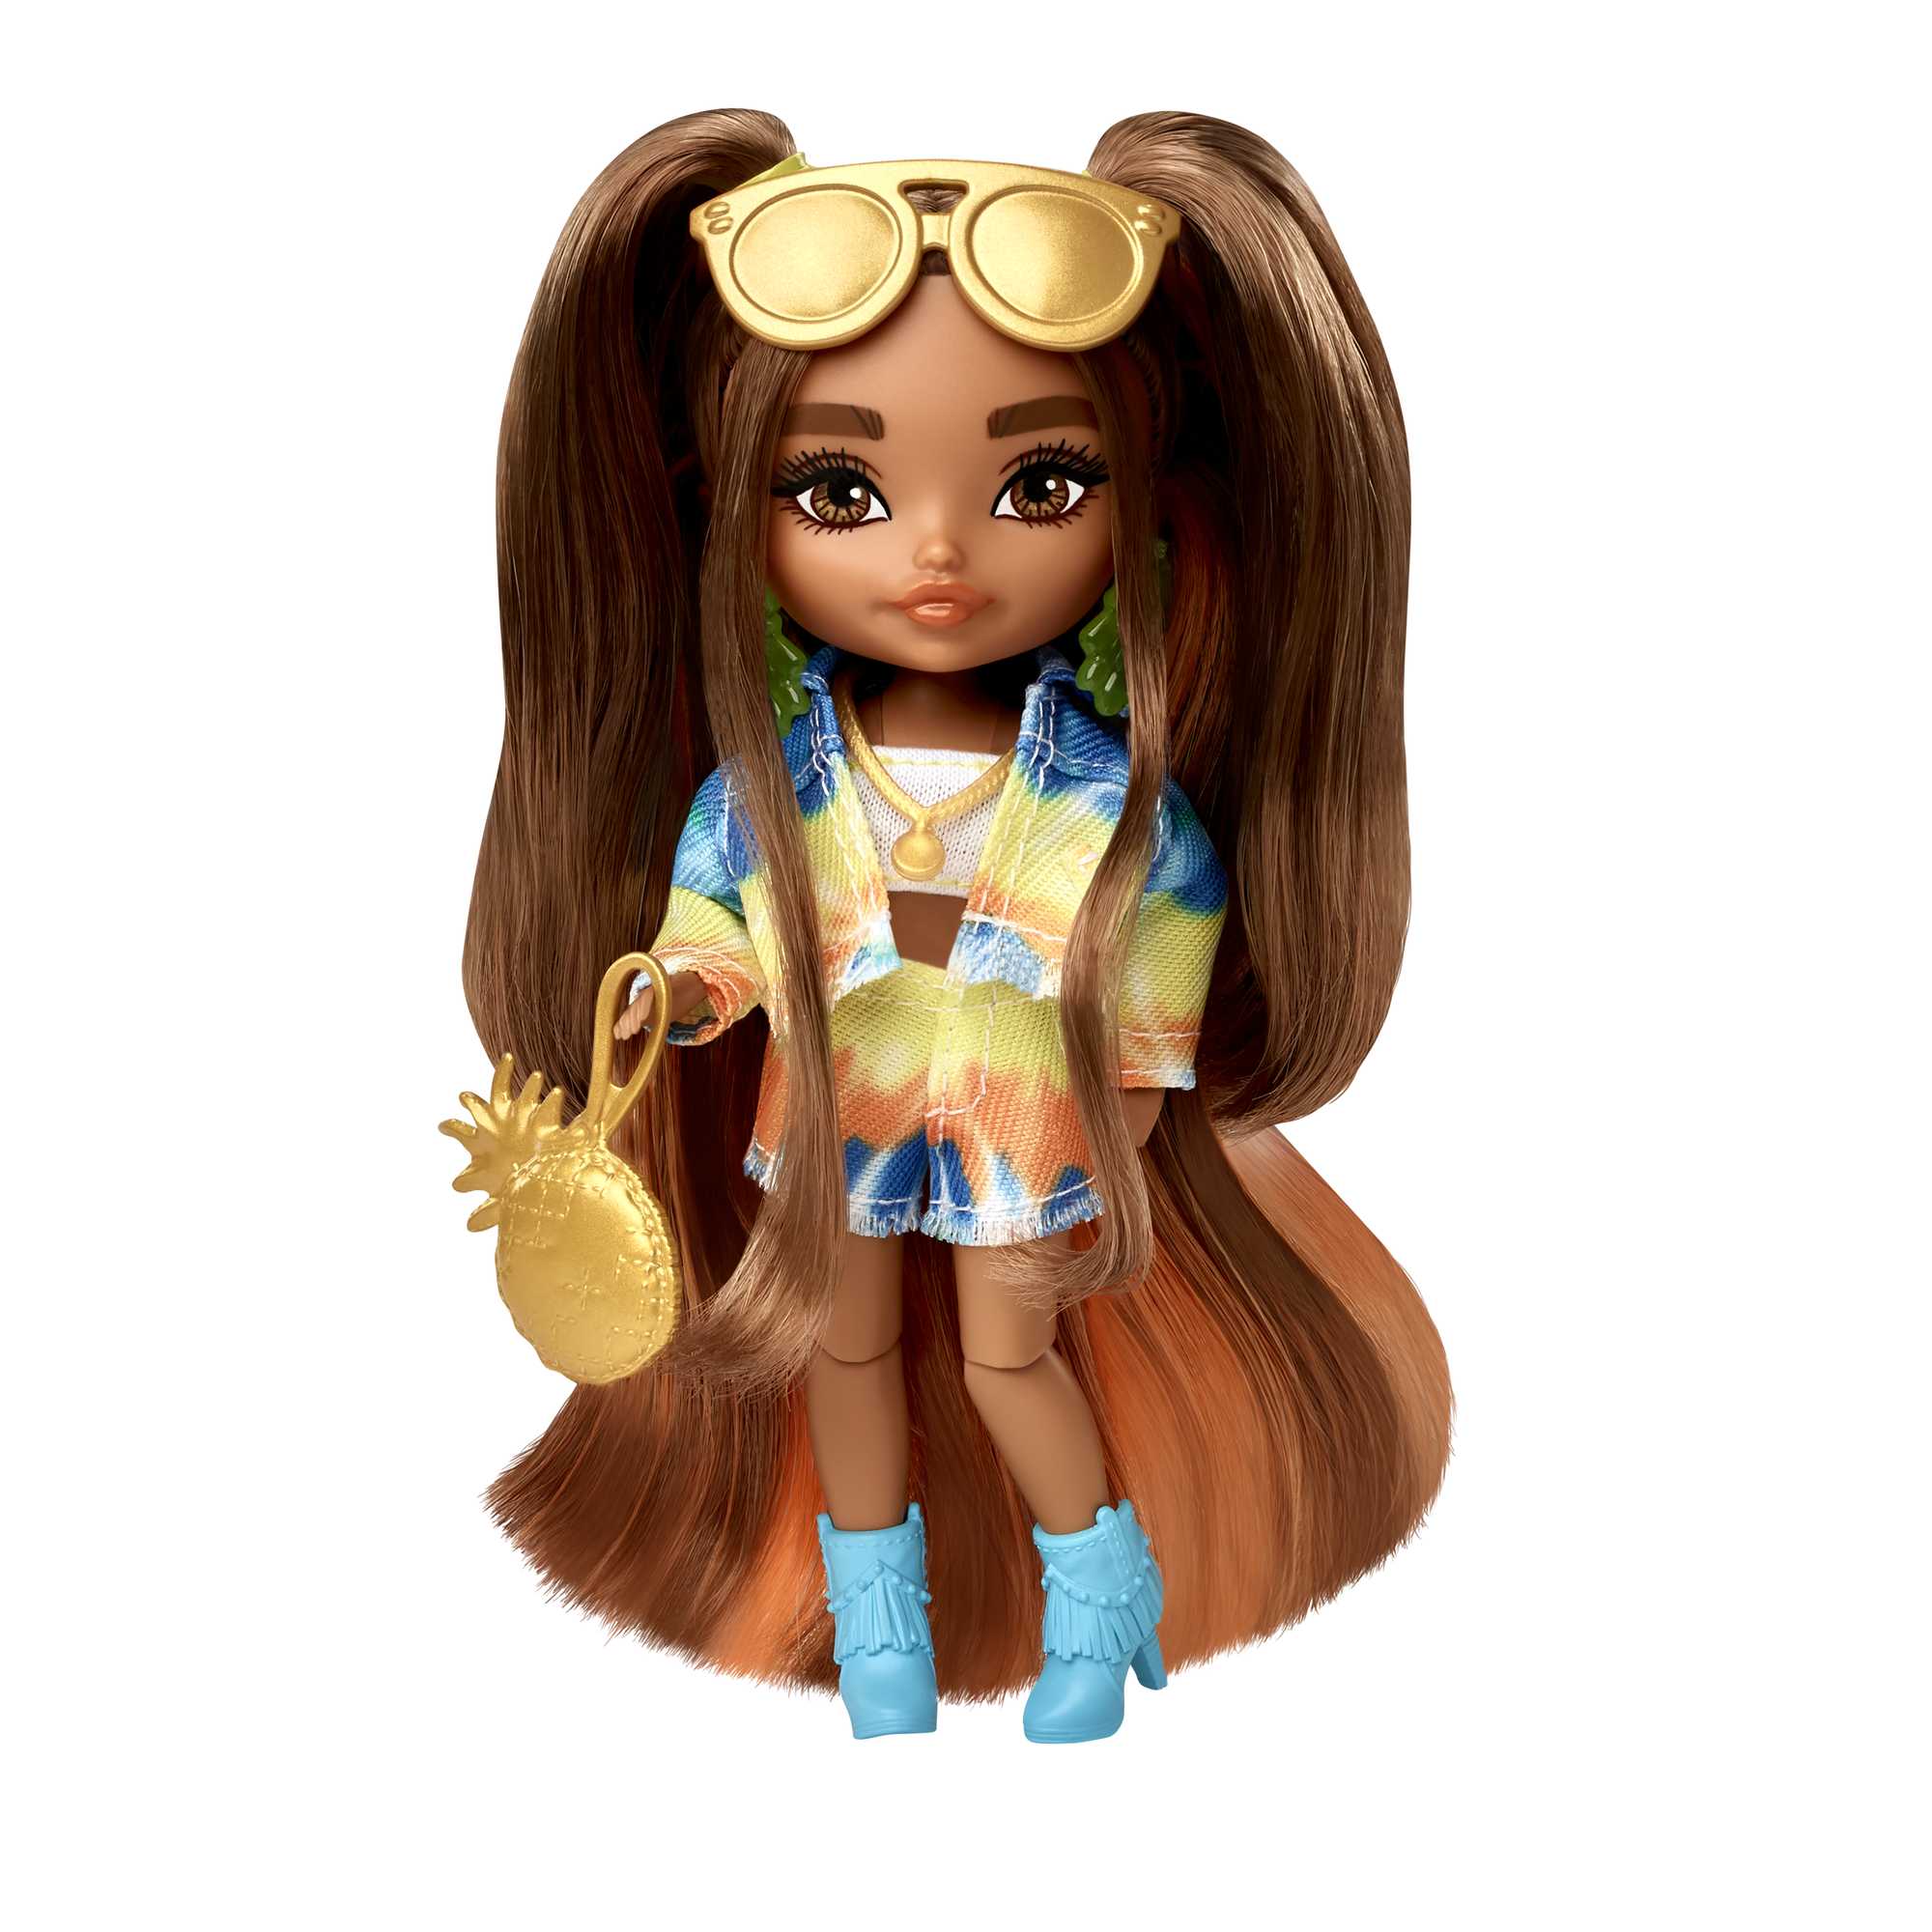 Comprar Boneca Barbie Extra Mini Minis Com Acessórios Mattel